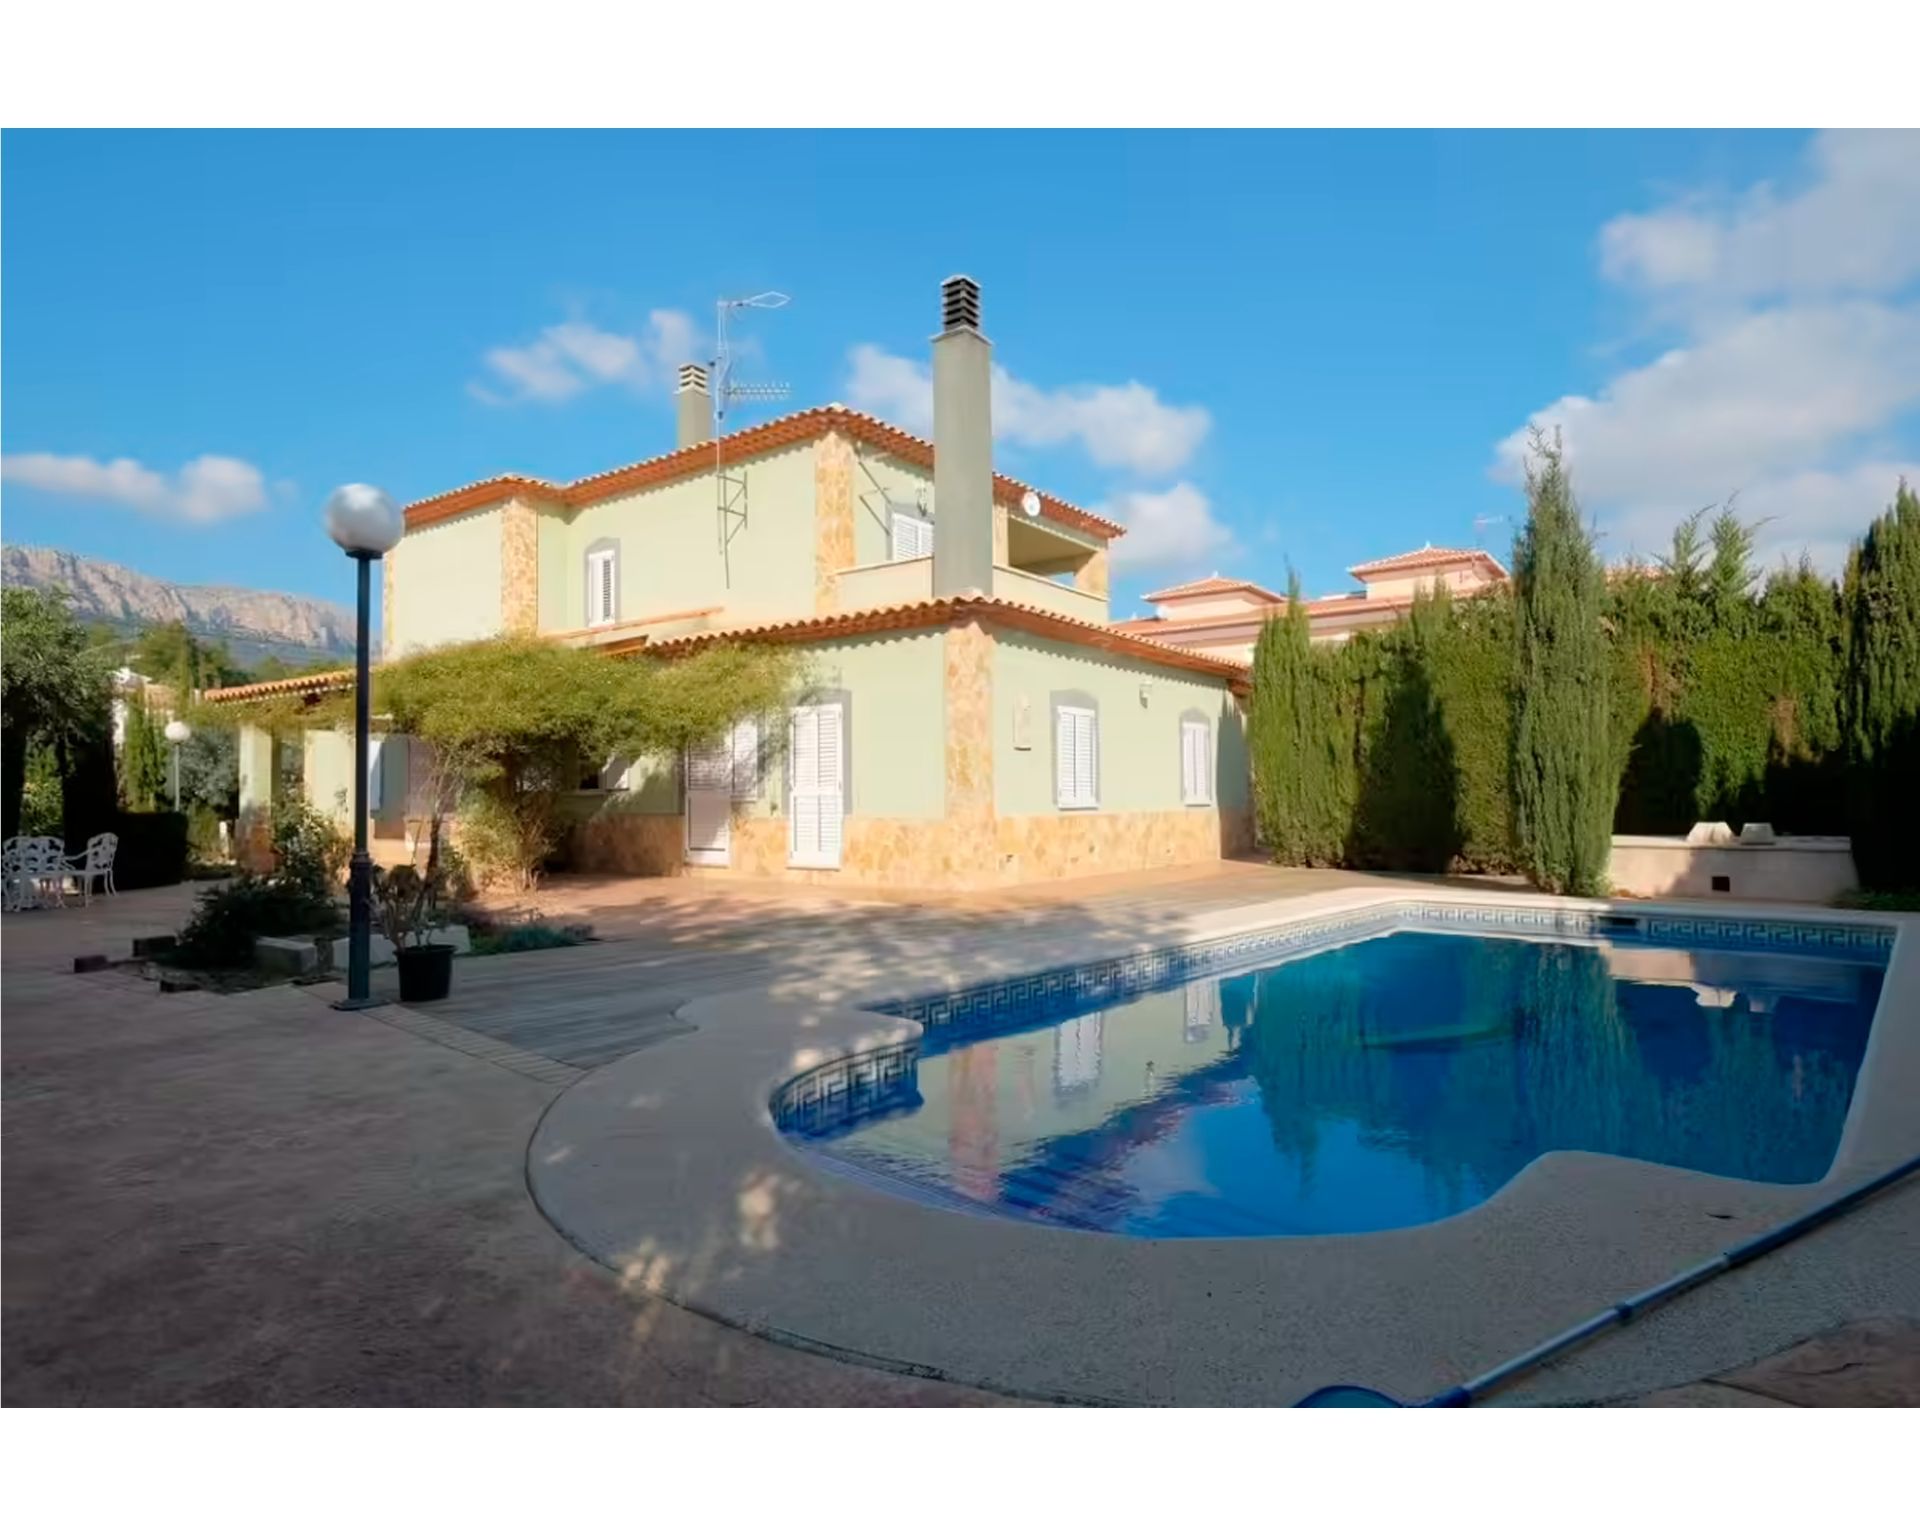 Magnifique villa indépendante avec jardin et piscine